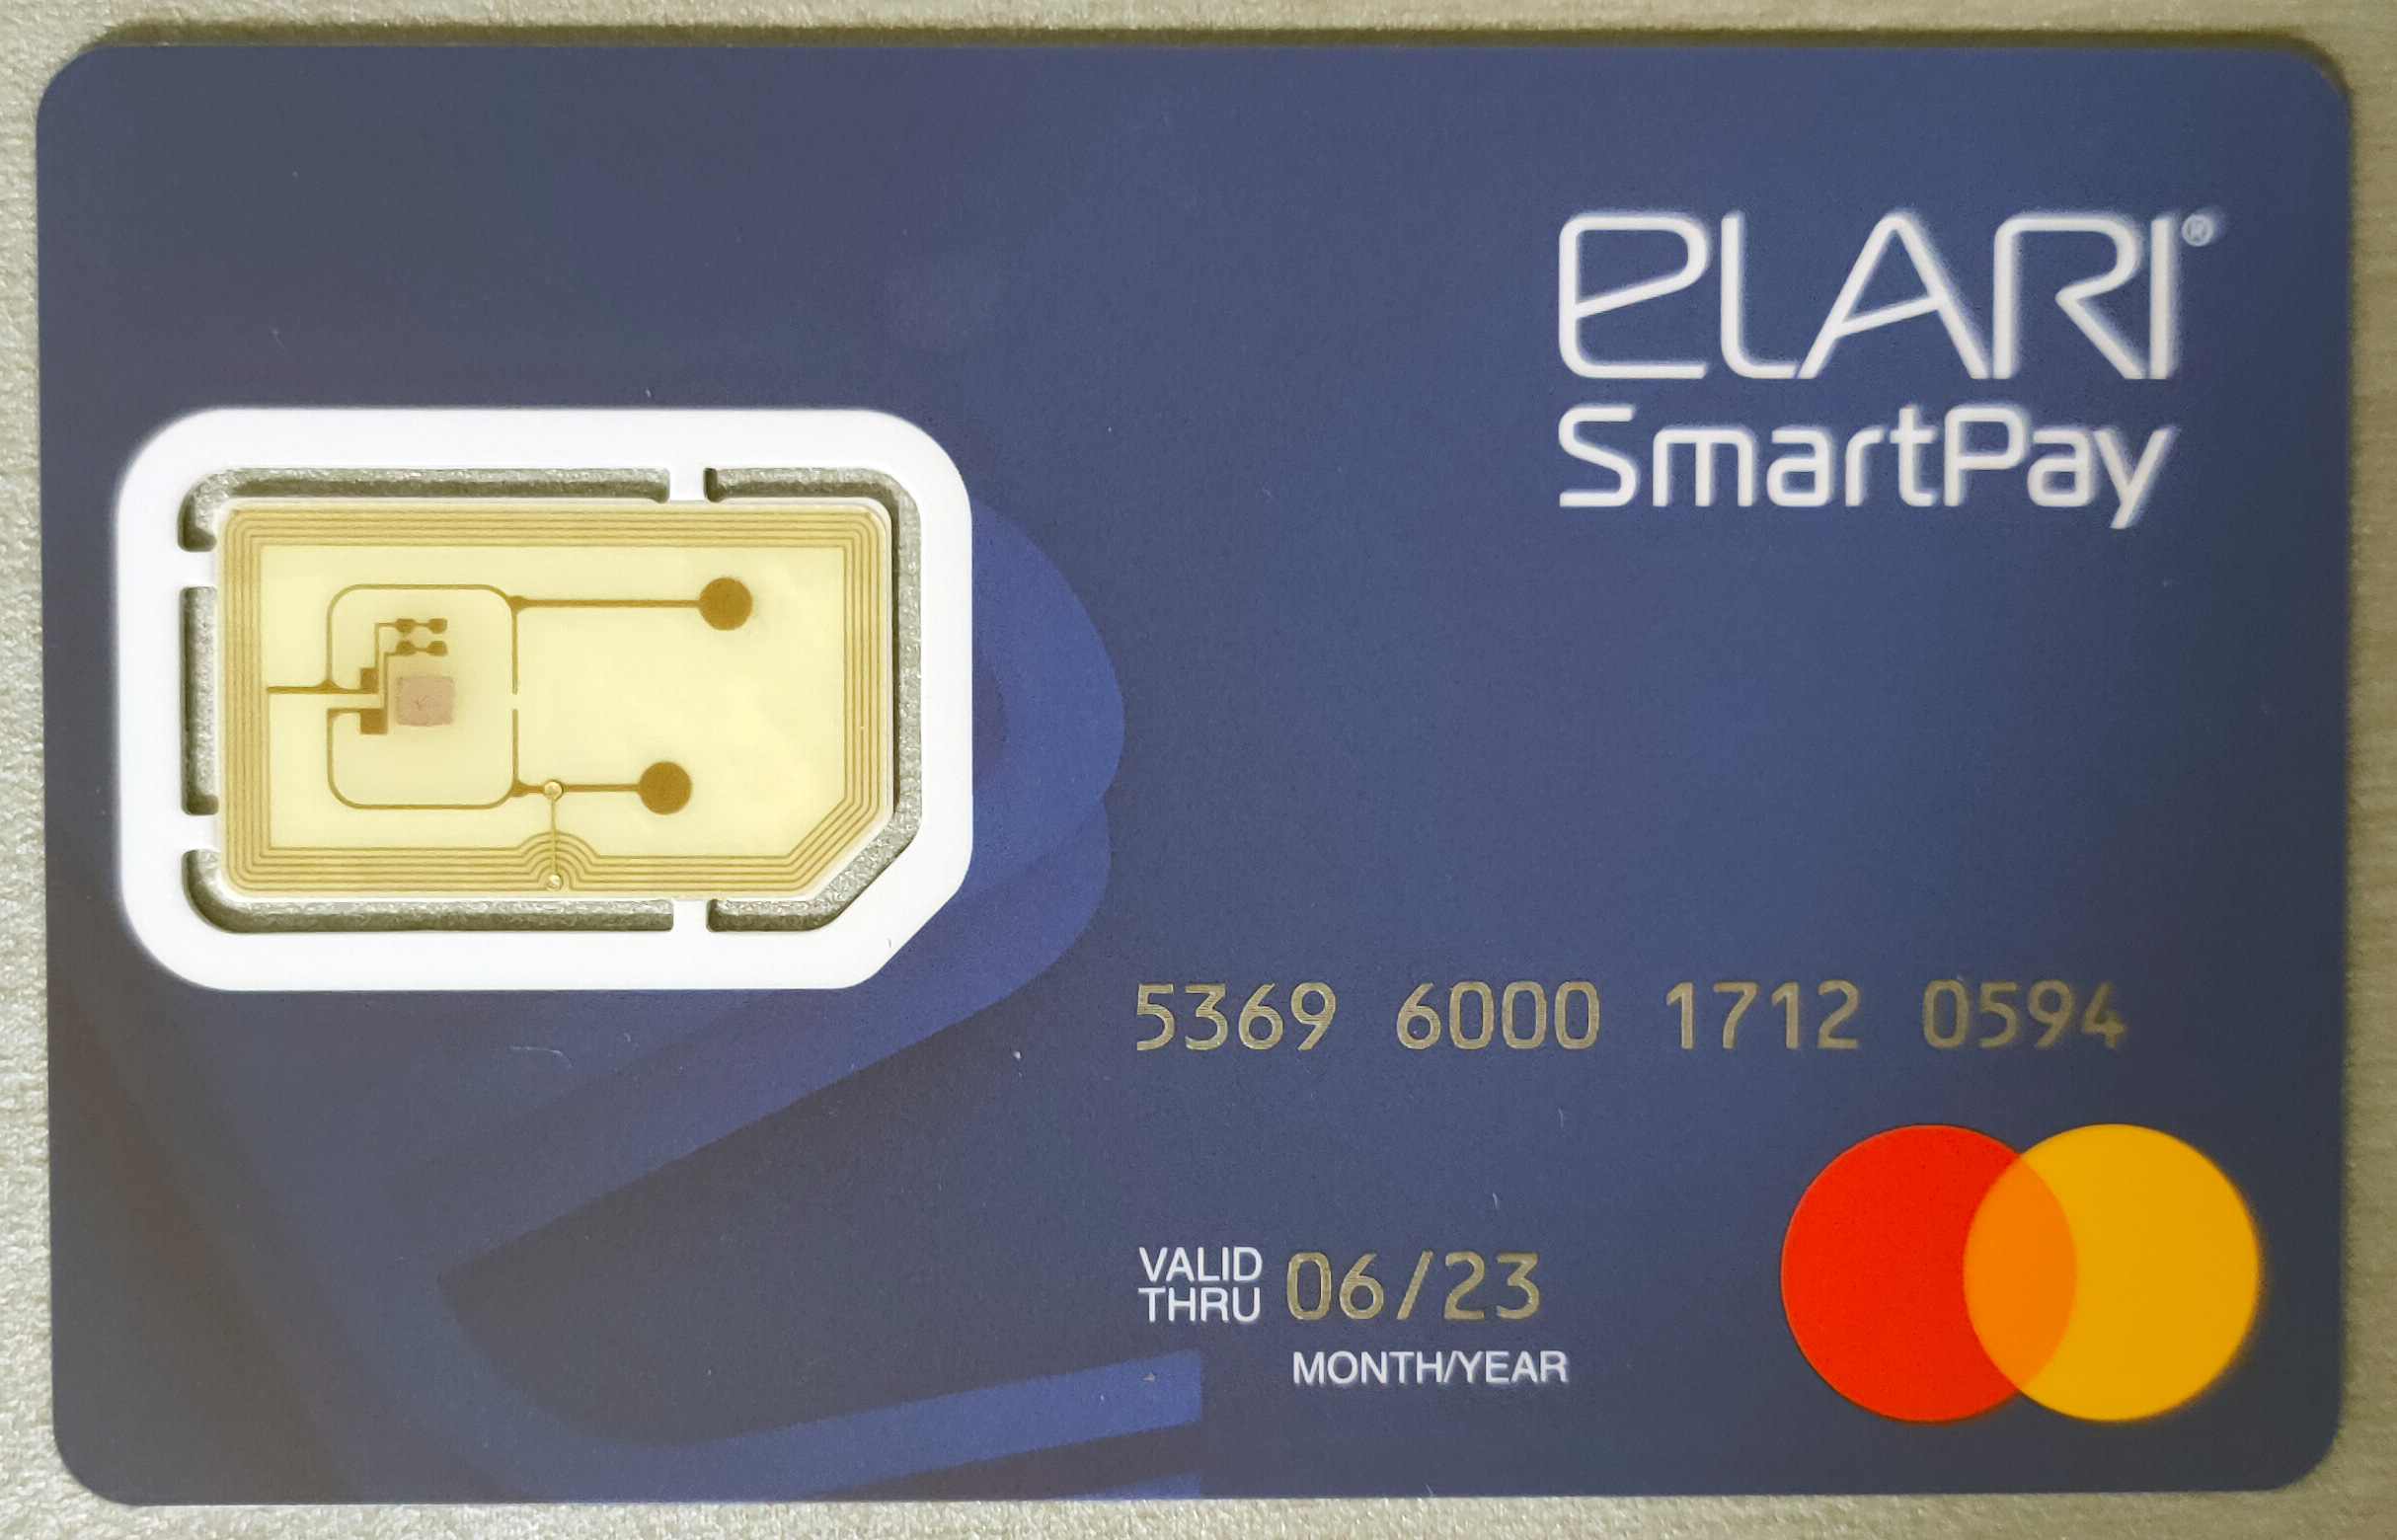 Power Card Elari. Браслет Elari SMARTPAY кошелек на руке, для бесконтактных платежей Red. Может ли размагнититься банковская карта от телефона. Smartpay